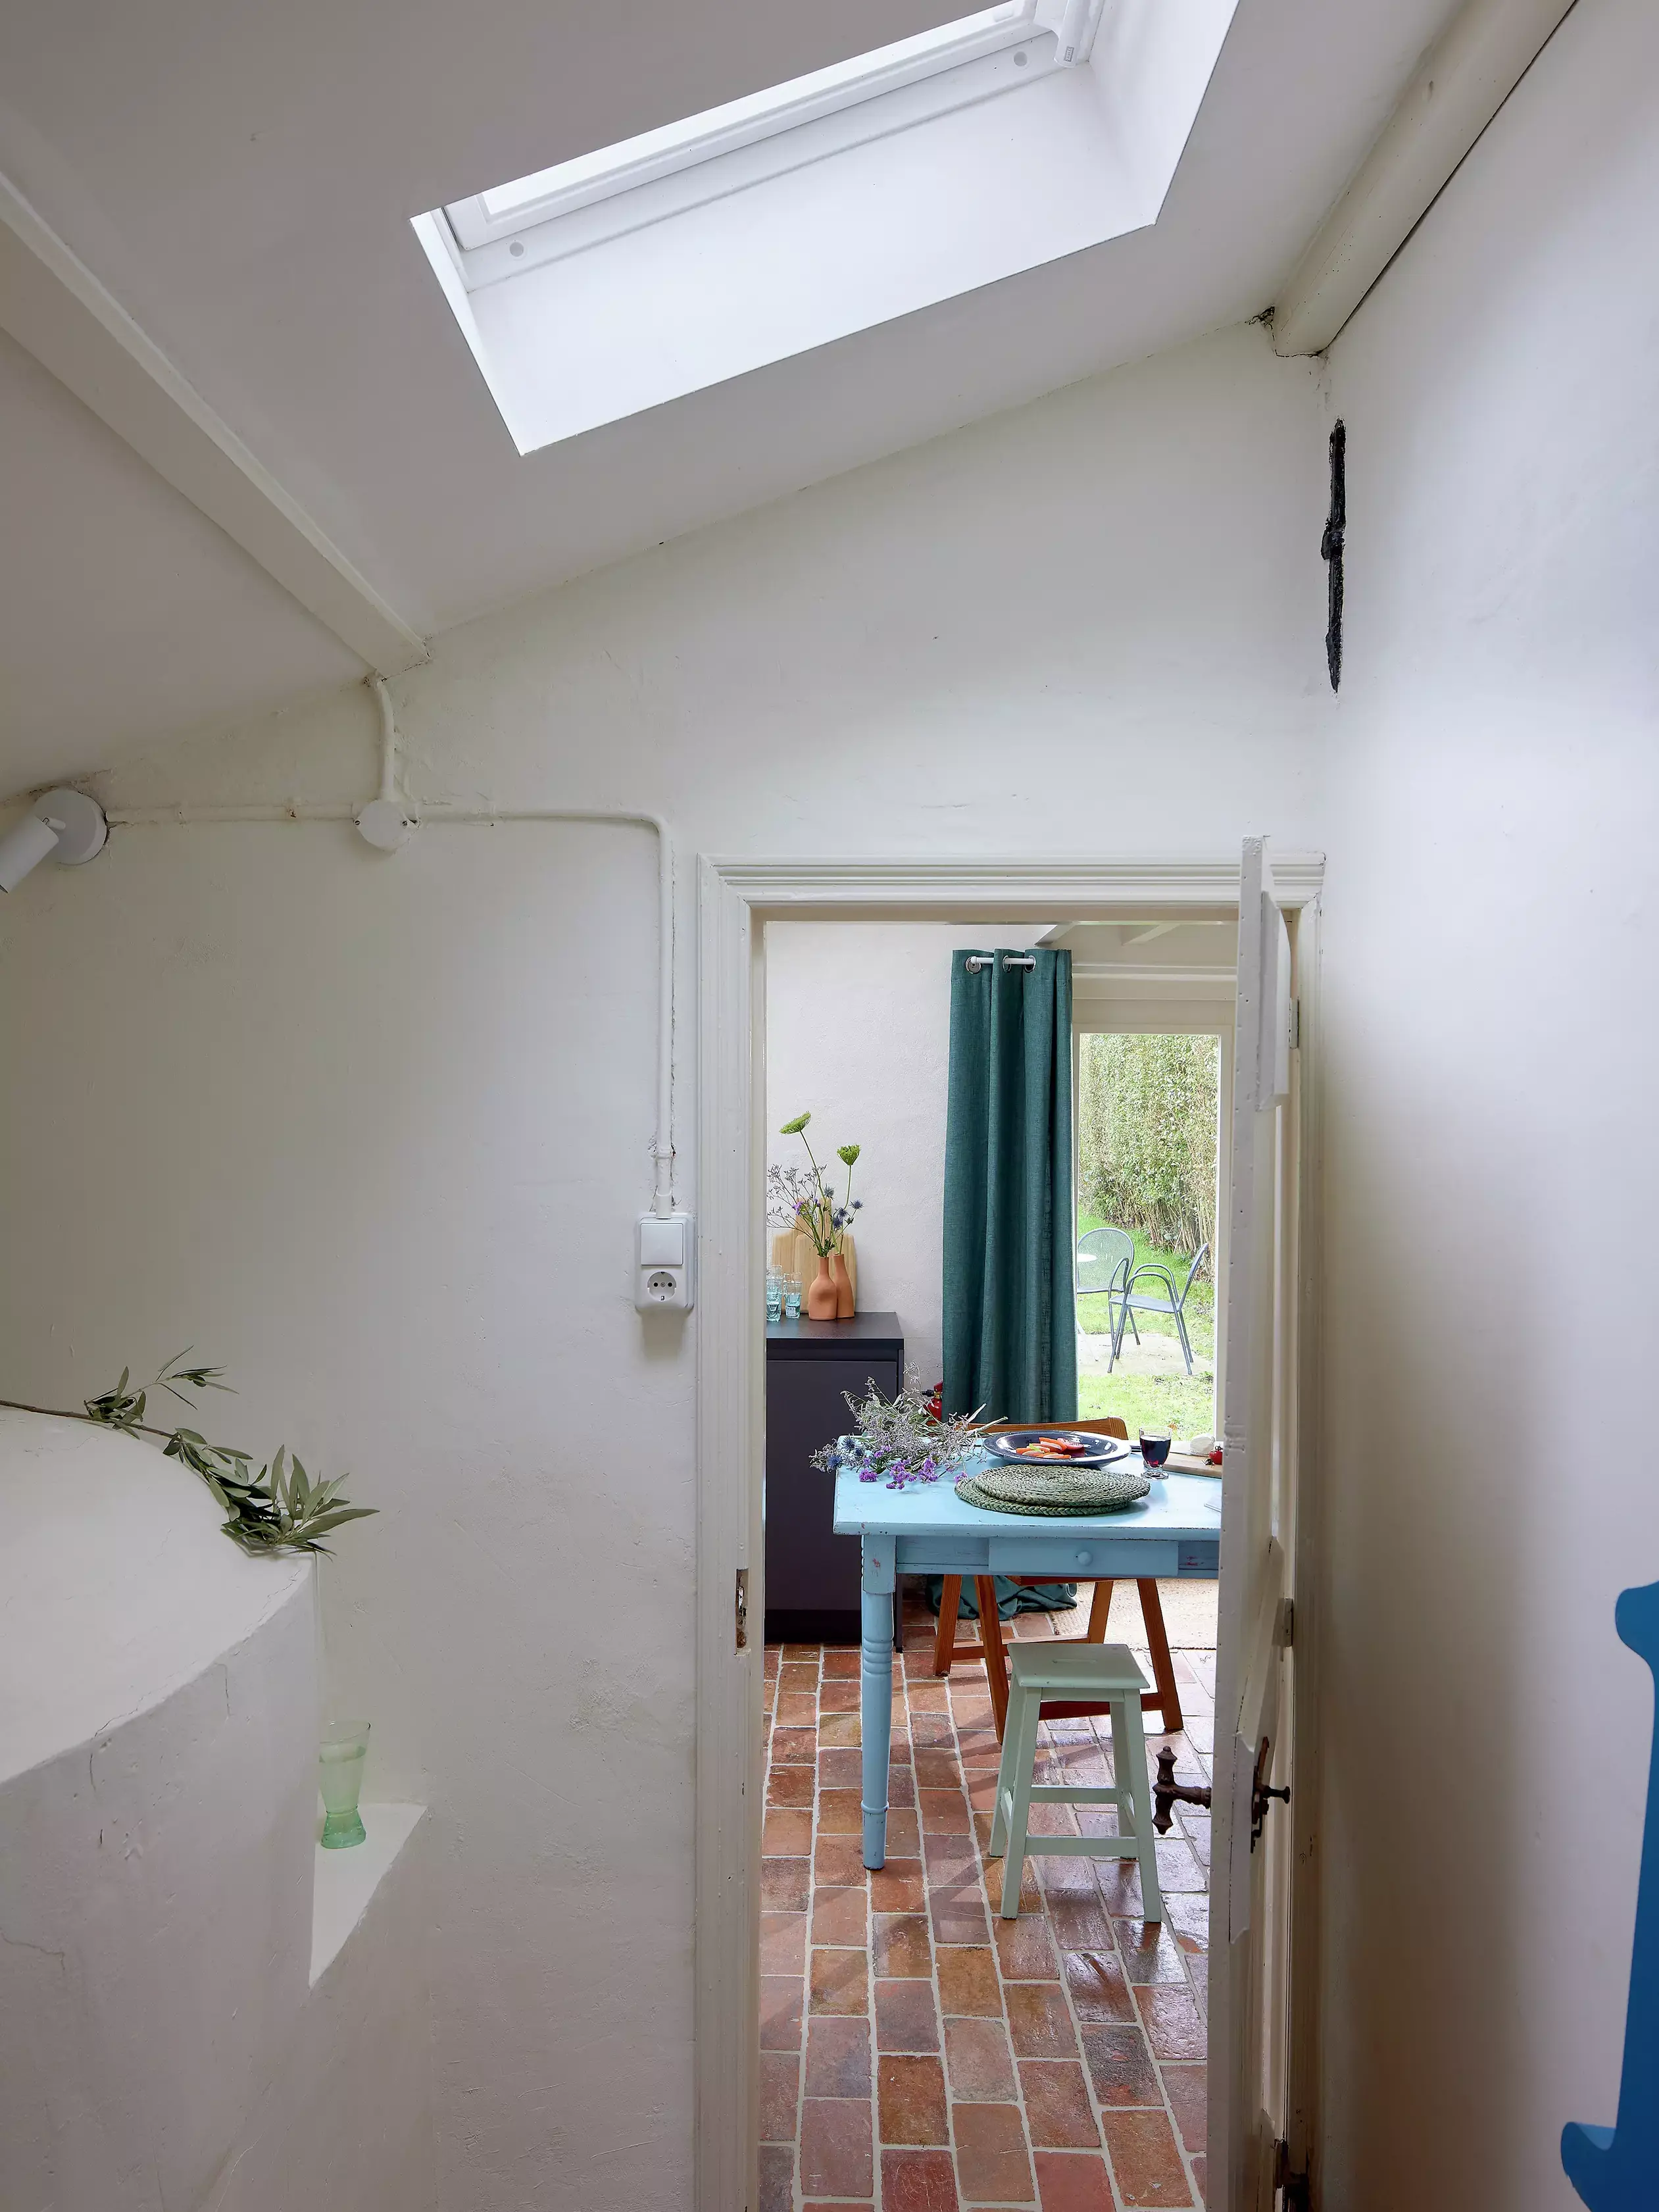 Espace salle à manger lumineux avec fenêtre de toit VELUX, carreaux en terre cuite et table bleue.